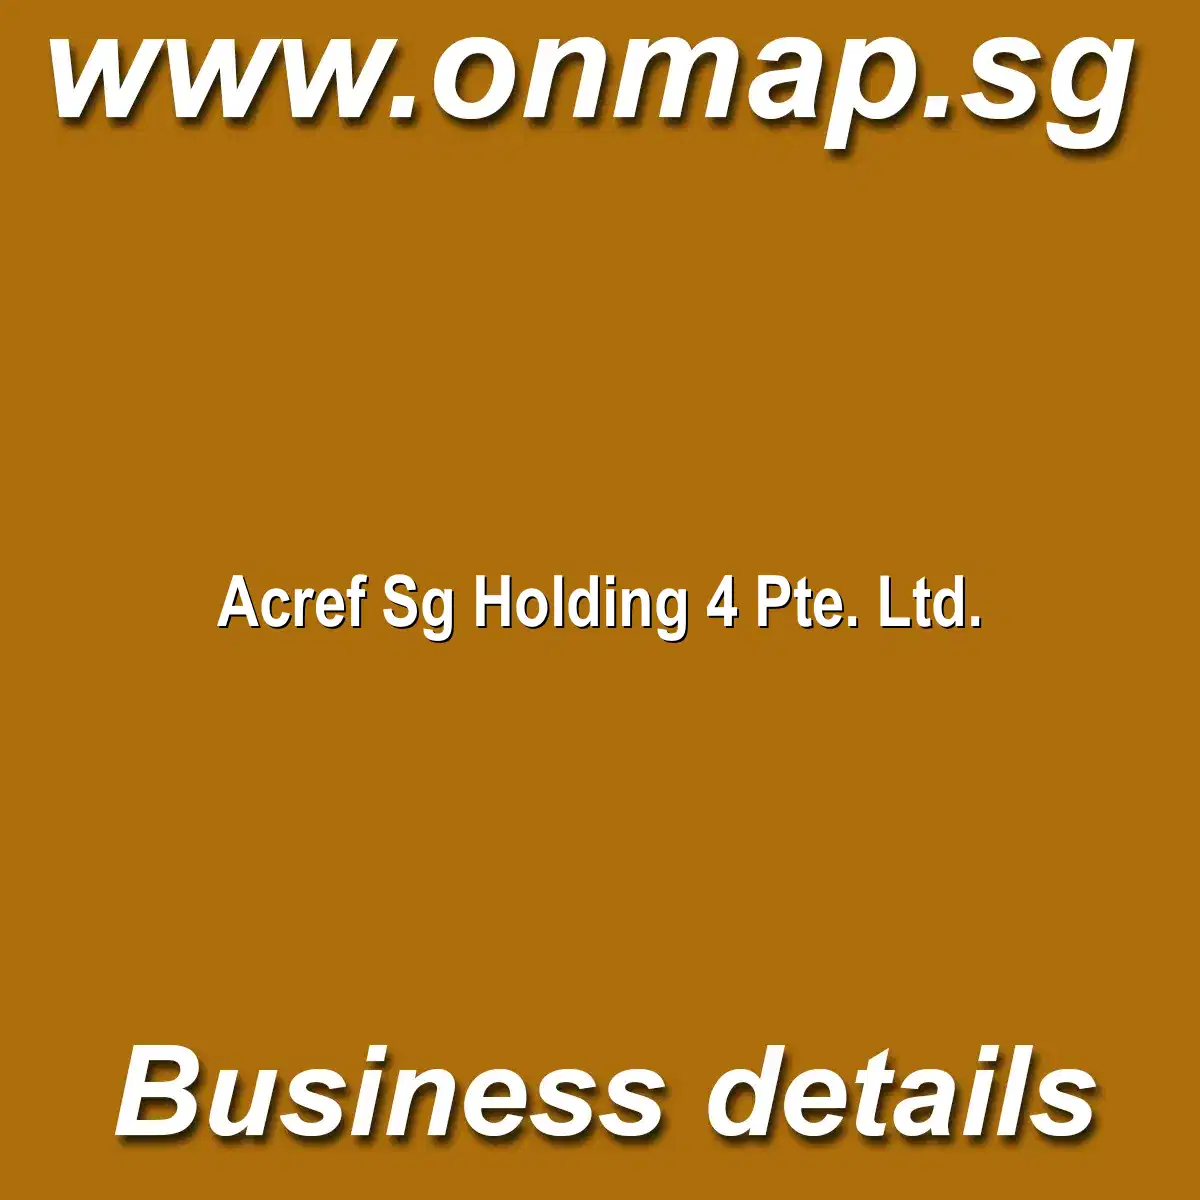 Acref Sg Holding 4 Pte. Ltd.